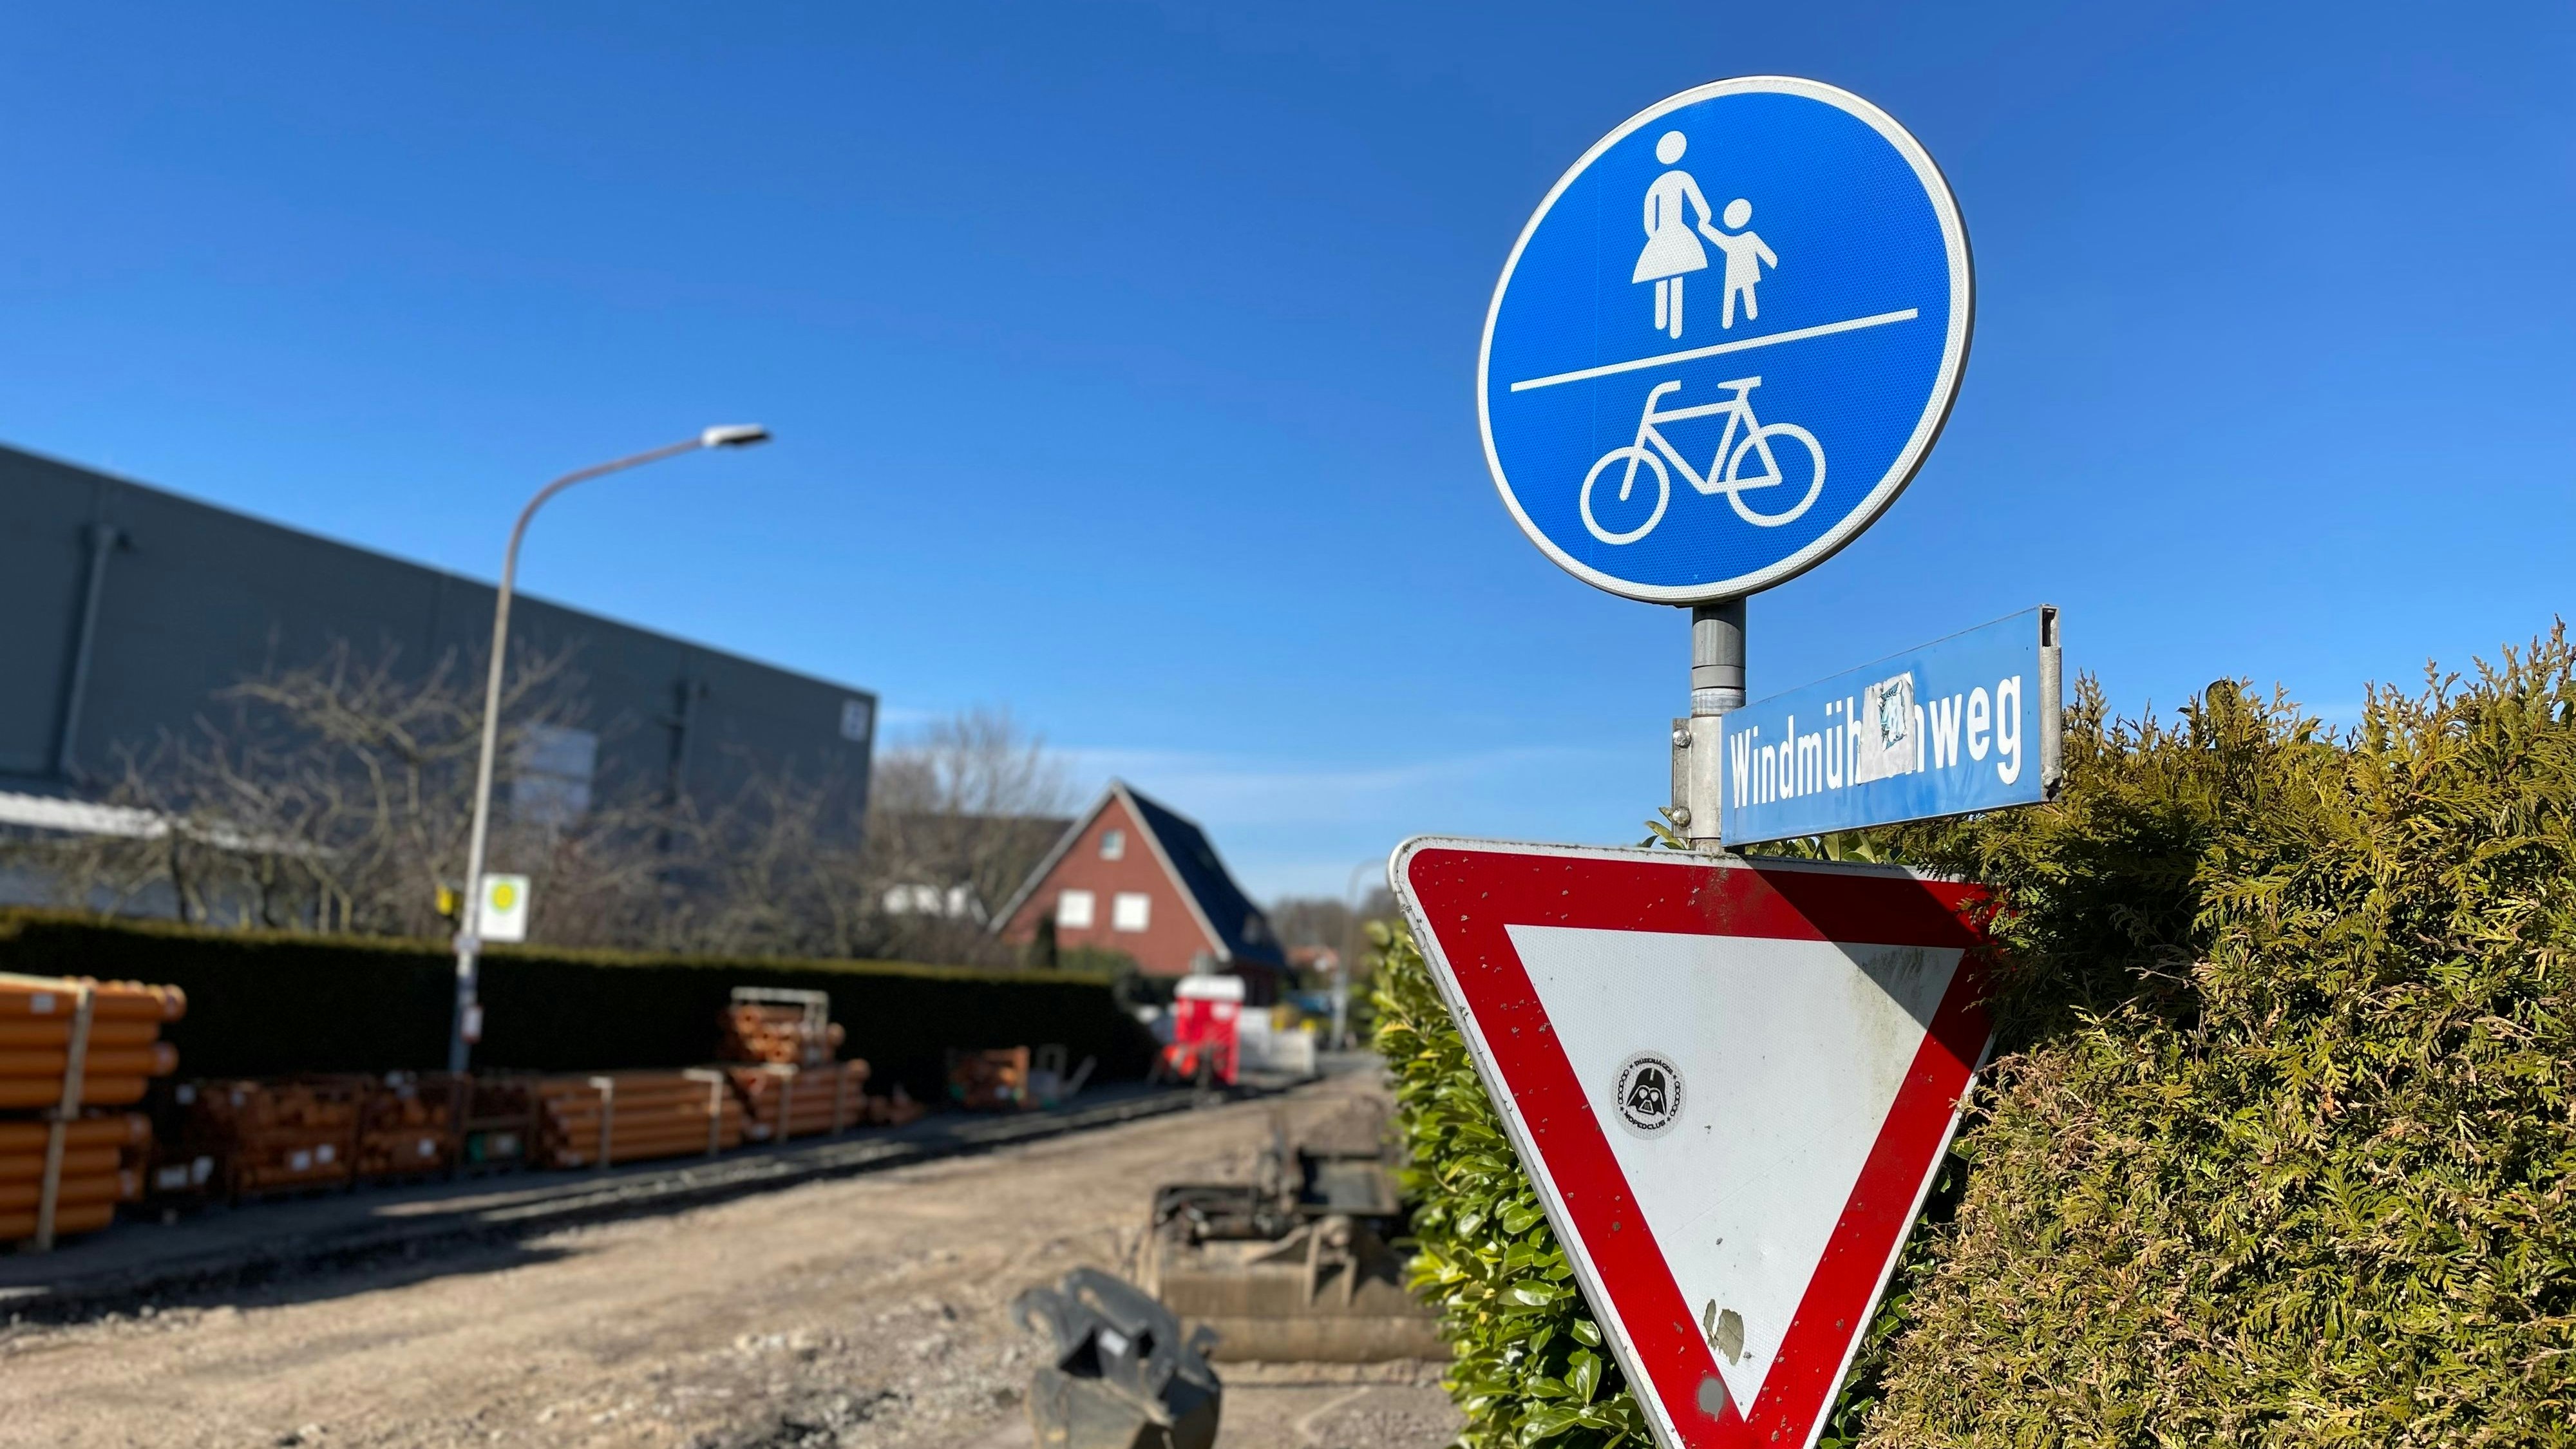 Kommt weg: Das kombinierte Gehweg/Radweg-Schild muss ersetzt werden. Damit werden auch Anliegerbeiträge fällig. Foto: G. Meyer